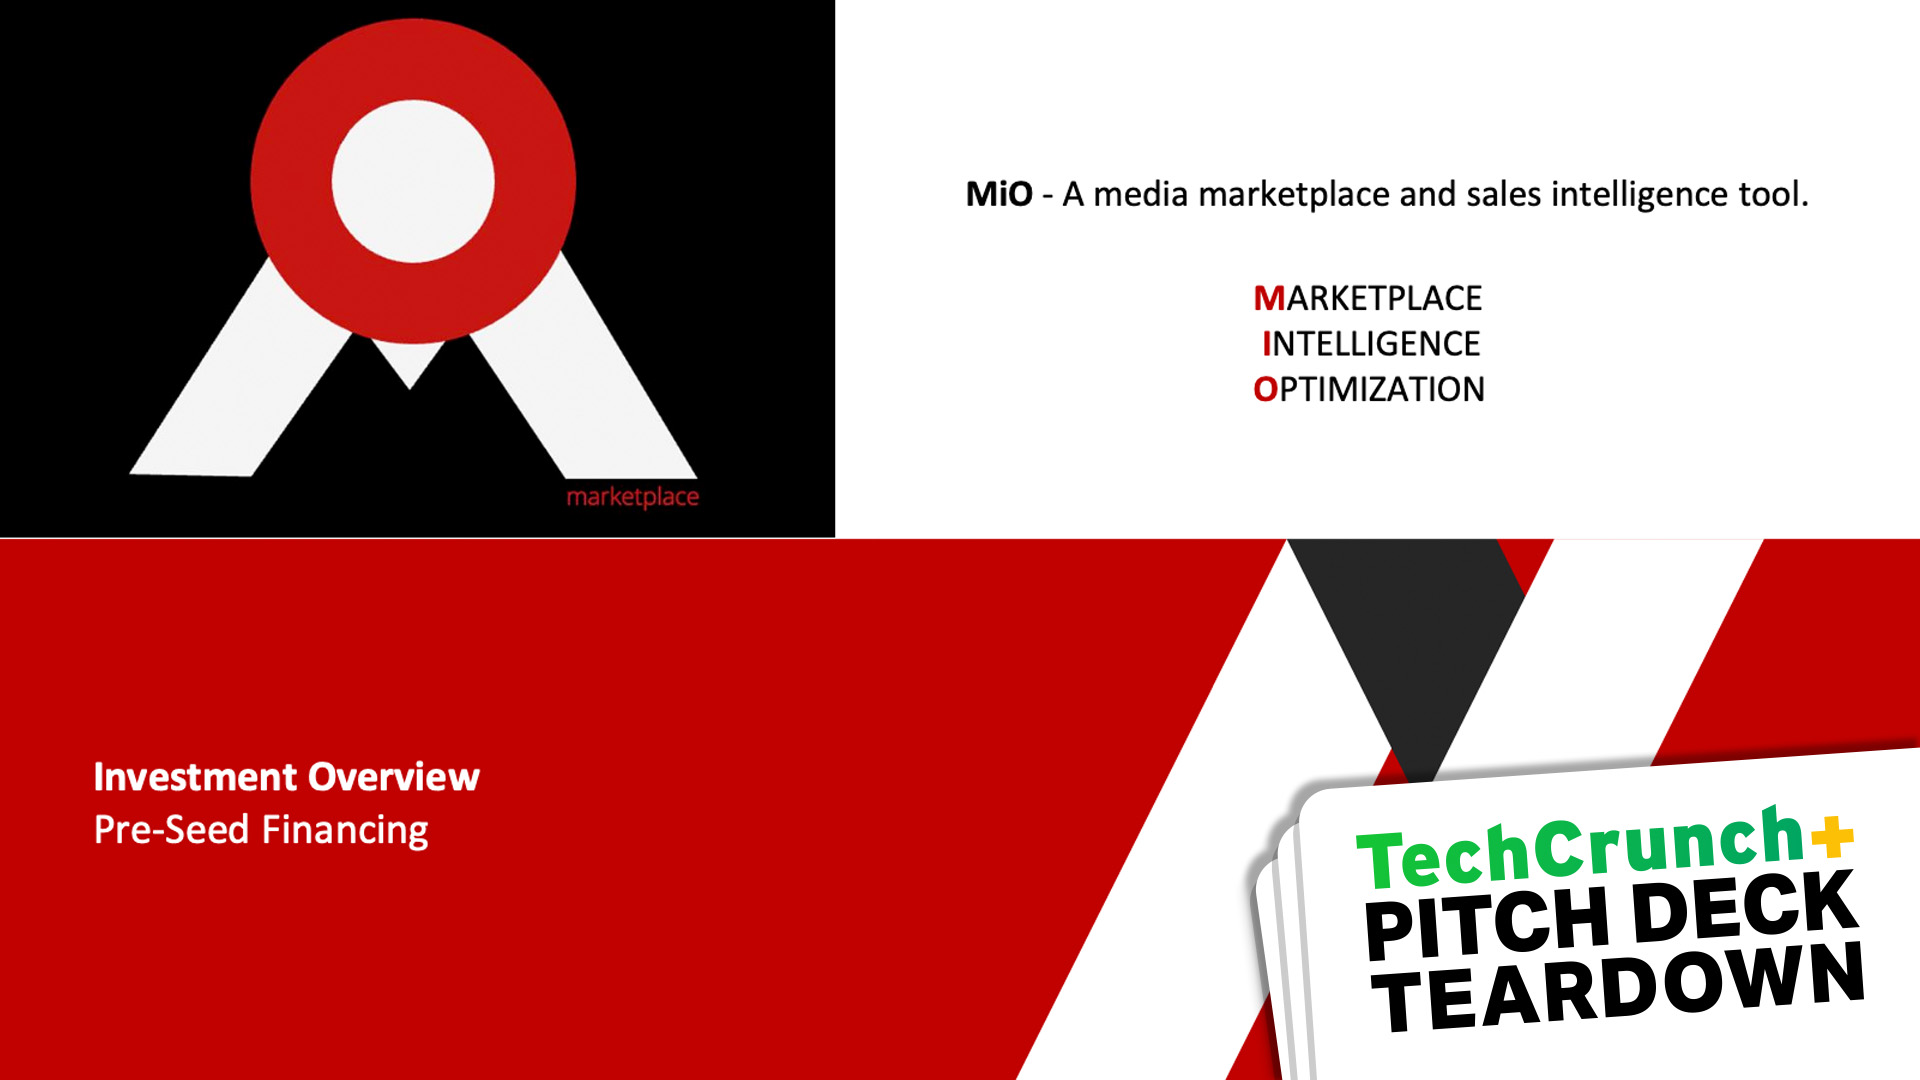 MiO - Informatives Marktplatz- und Verkaufsinformationstool.  Verbessern Sie die Marktintelligenz